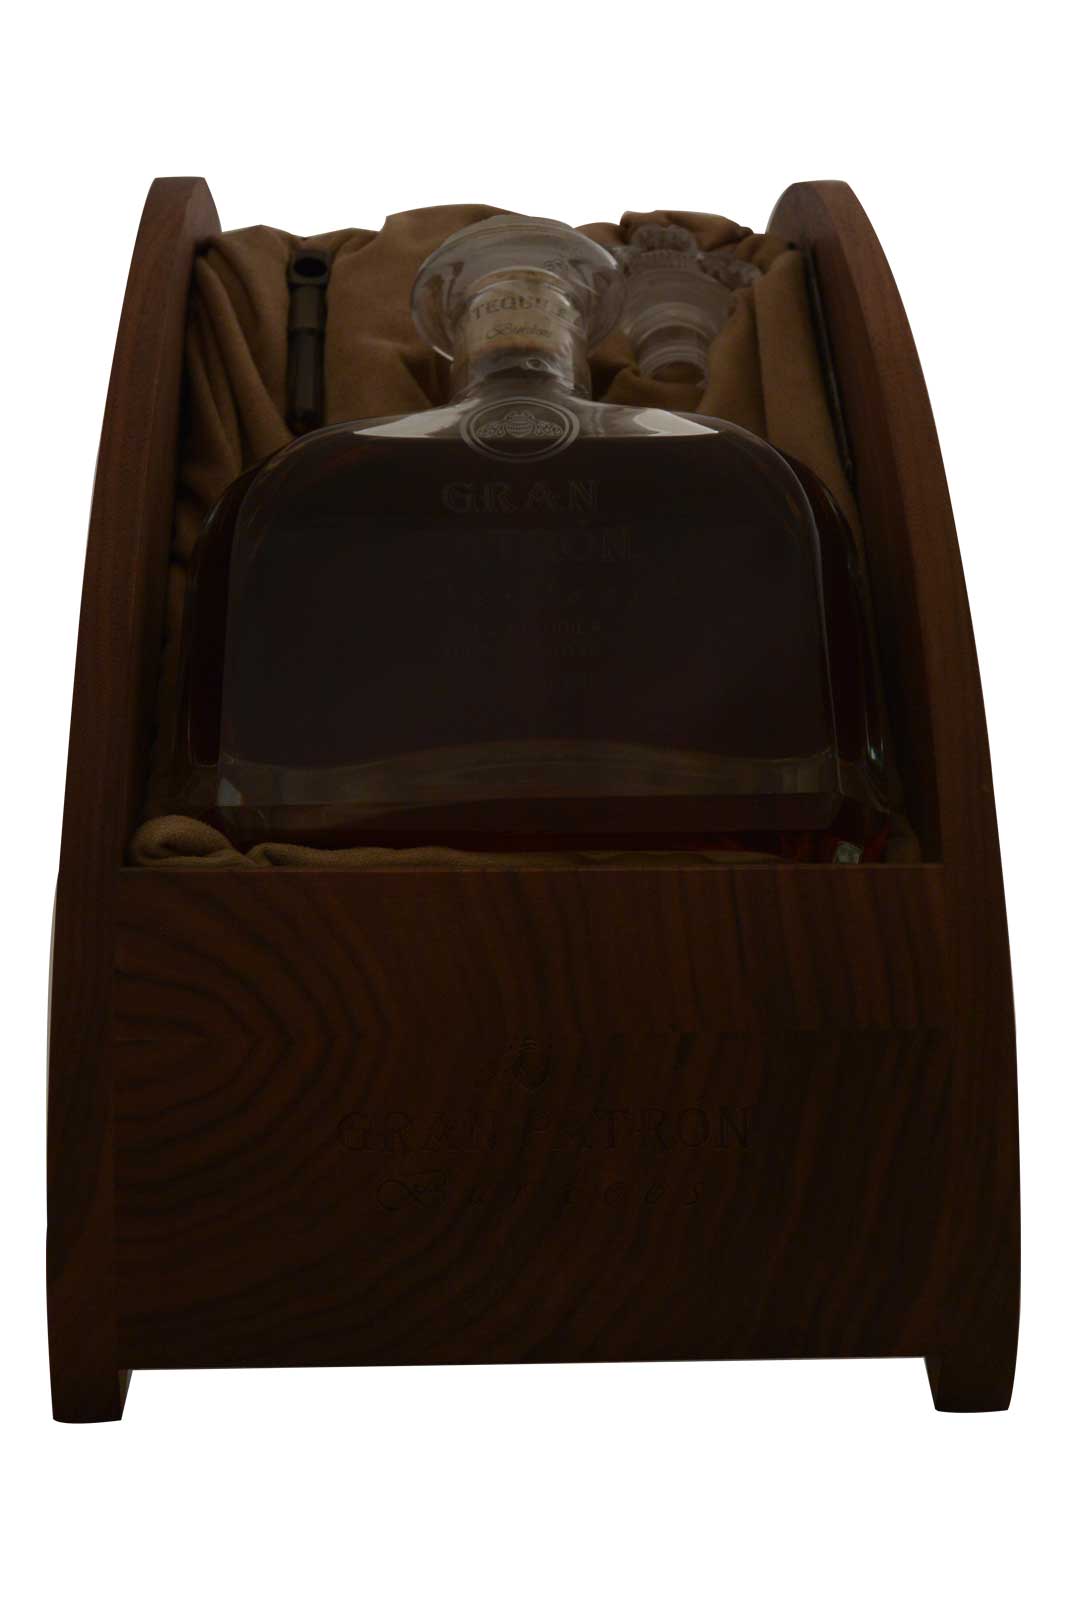 Gran Patron Anejo Tequila (Luxury Box)